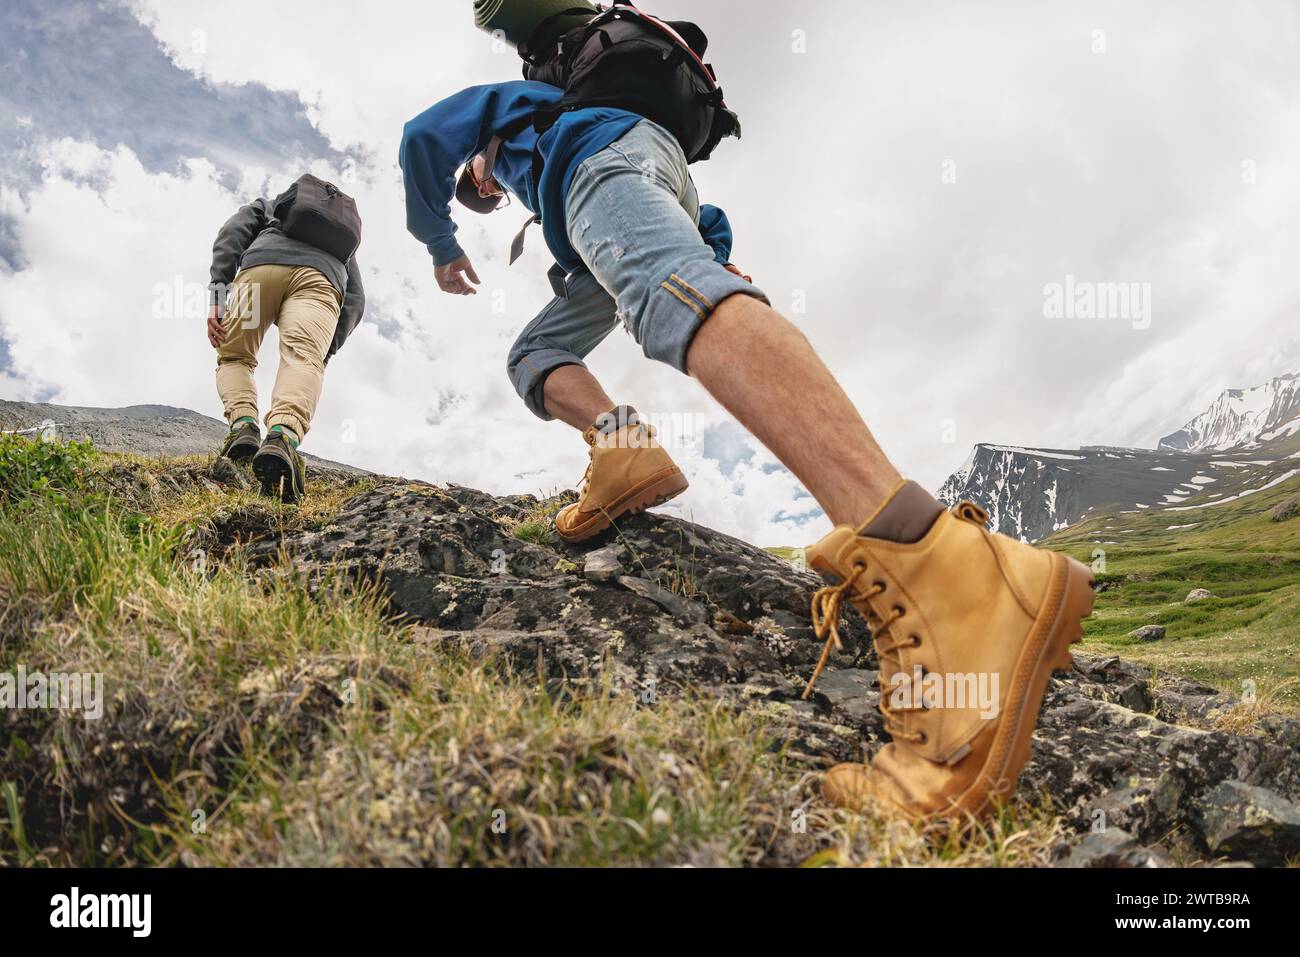 Deux jeunes randonneurs avec sacs à dos promenades en montagne. Gros plan photo de jambes de touristes en montée Banque D'Images